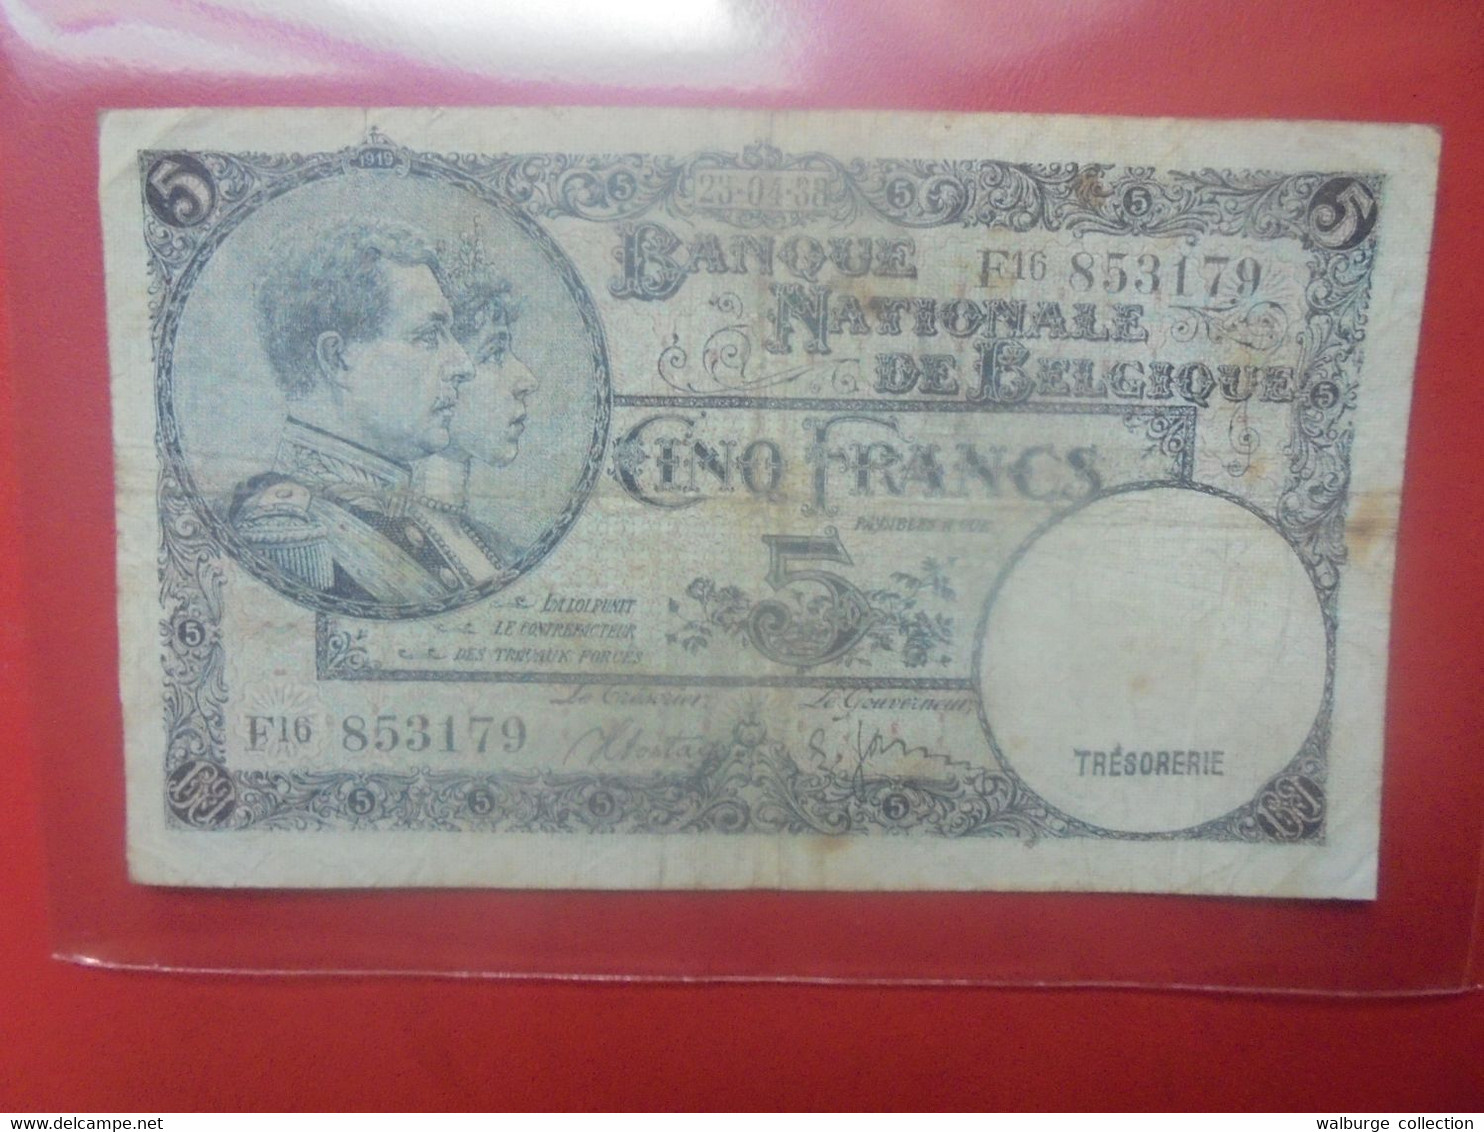 BELGIQUE 5 Francs 1938 Circuler (B.29) - 5 Francos